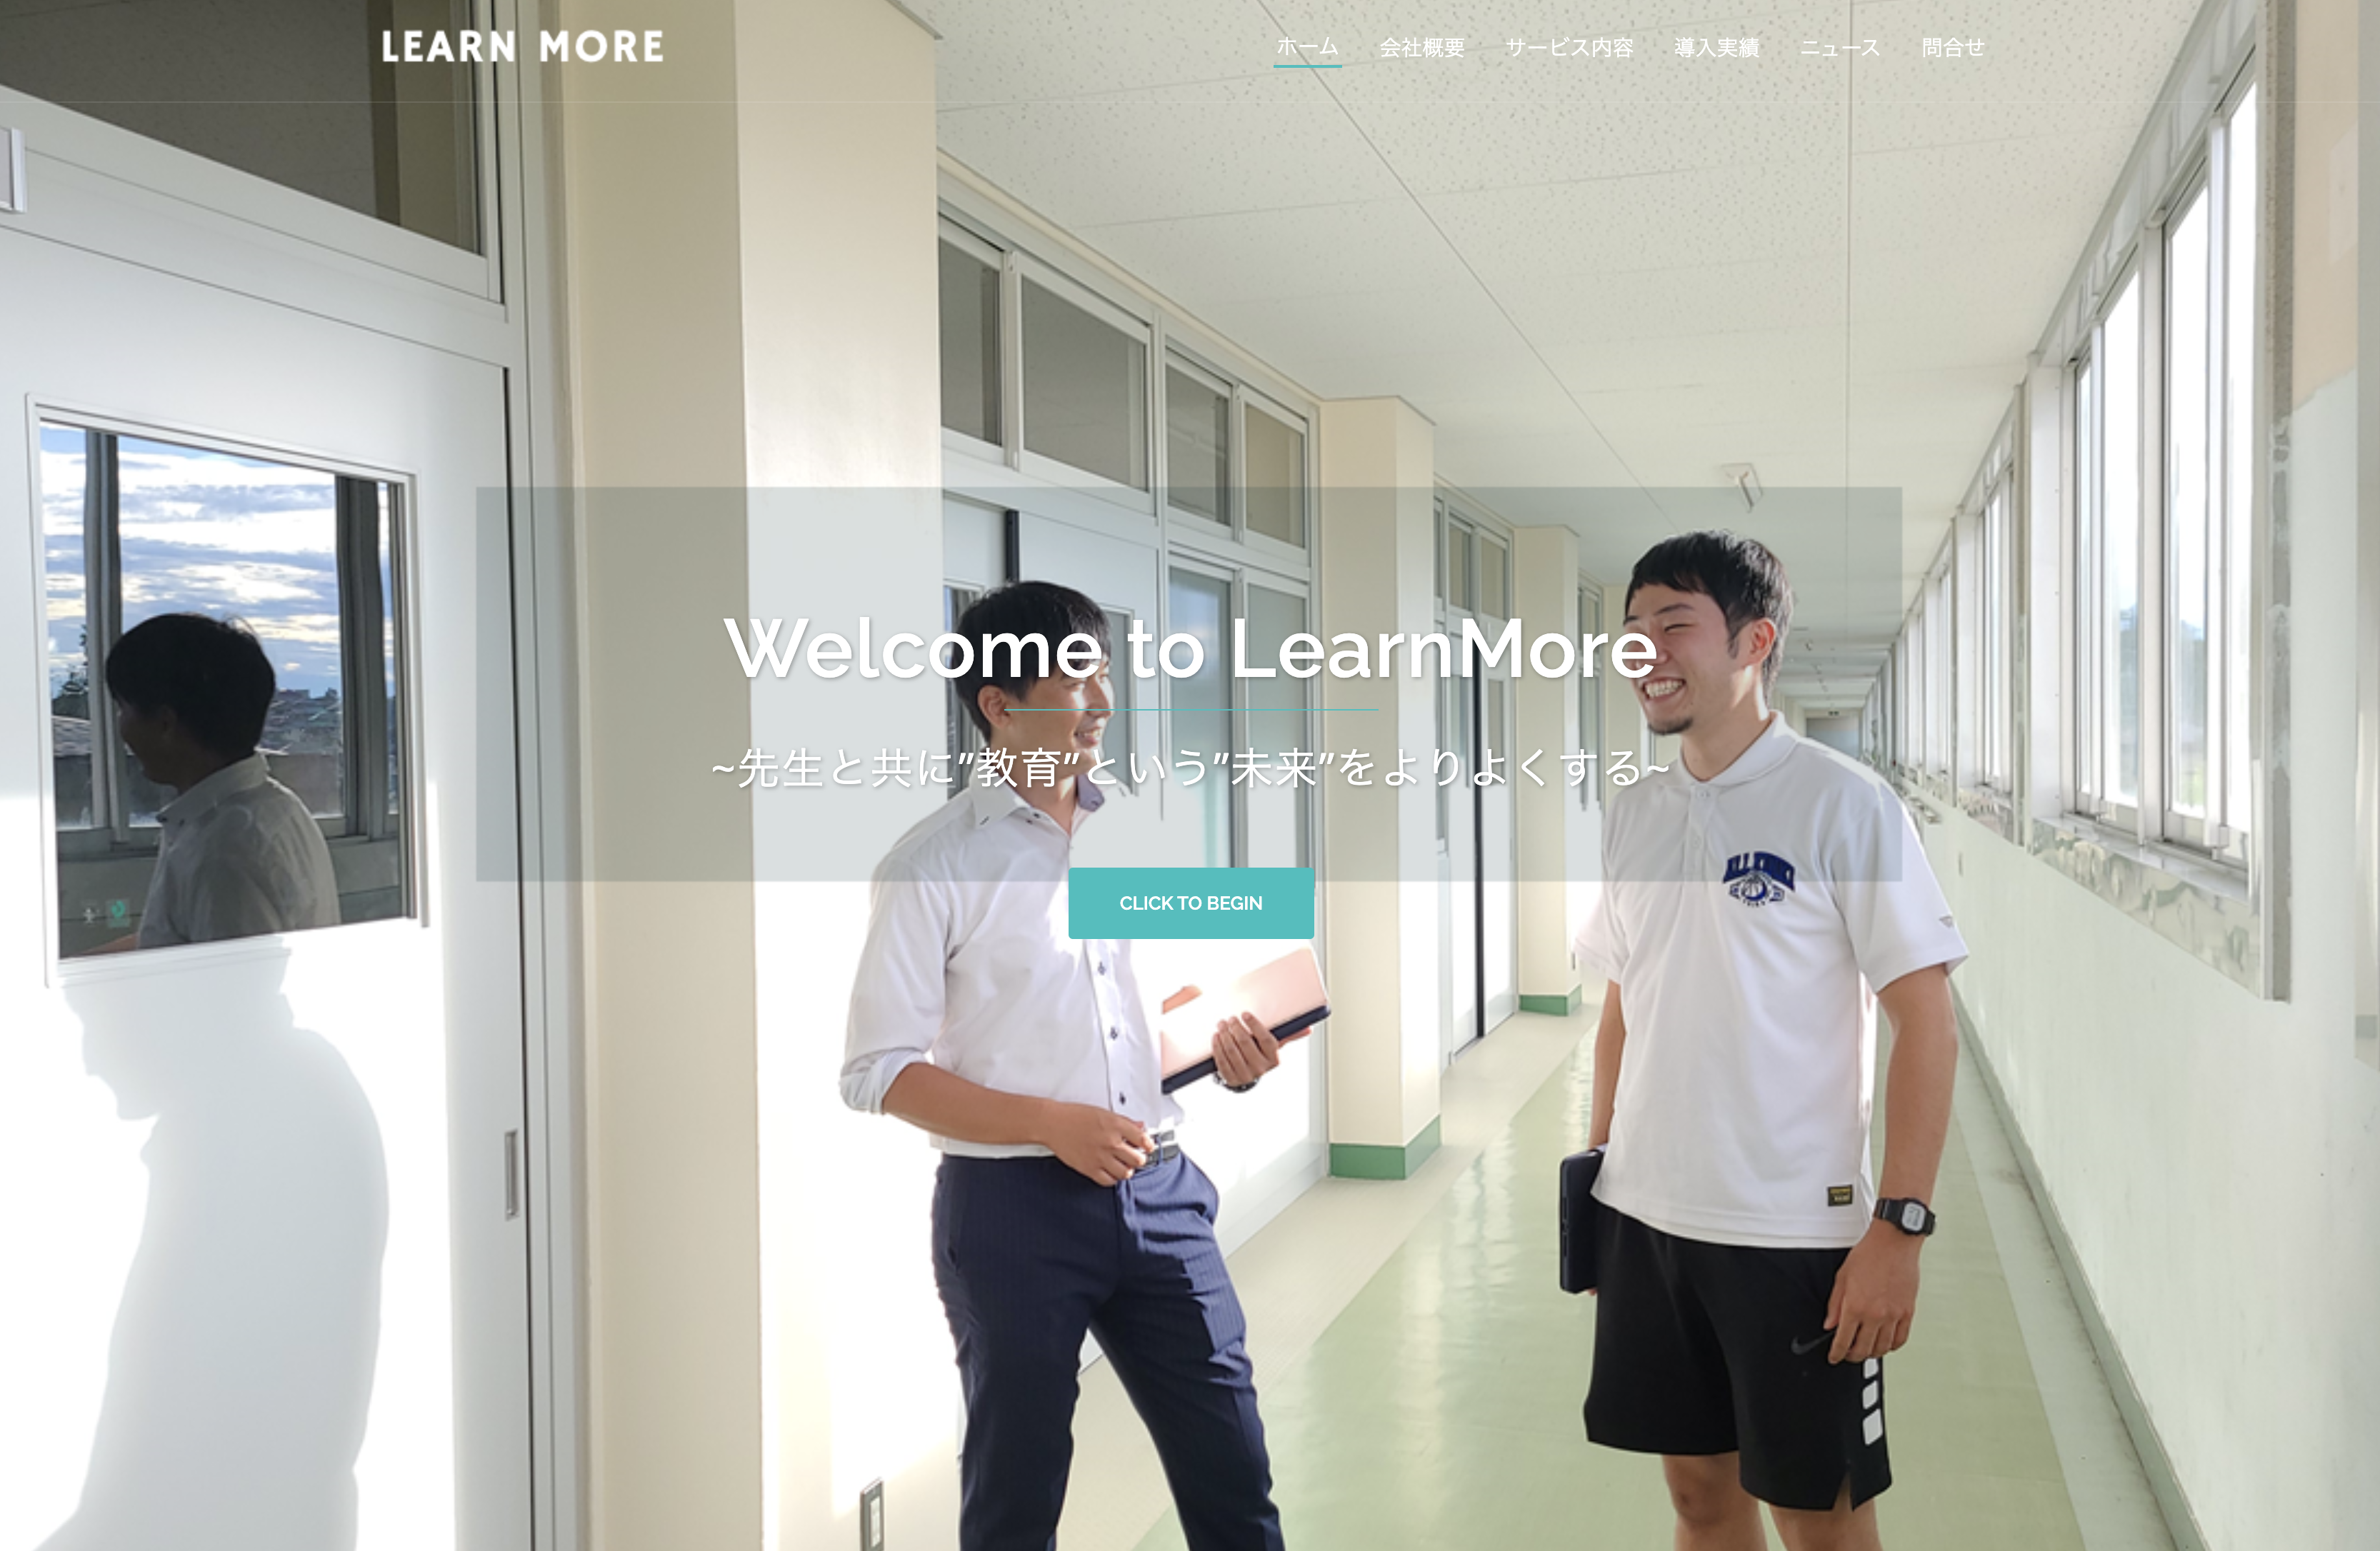 株式会社LearnMoreの株式会社LearnMore:社員研修サービス